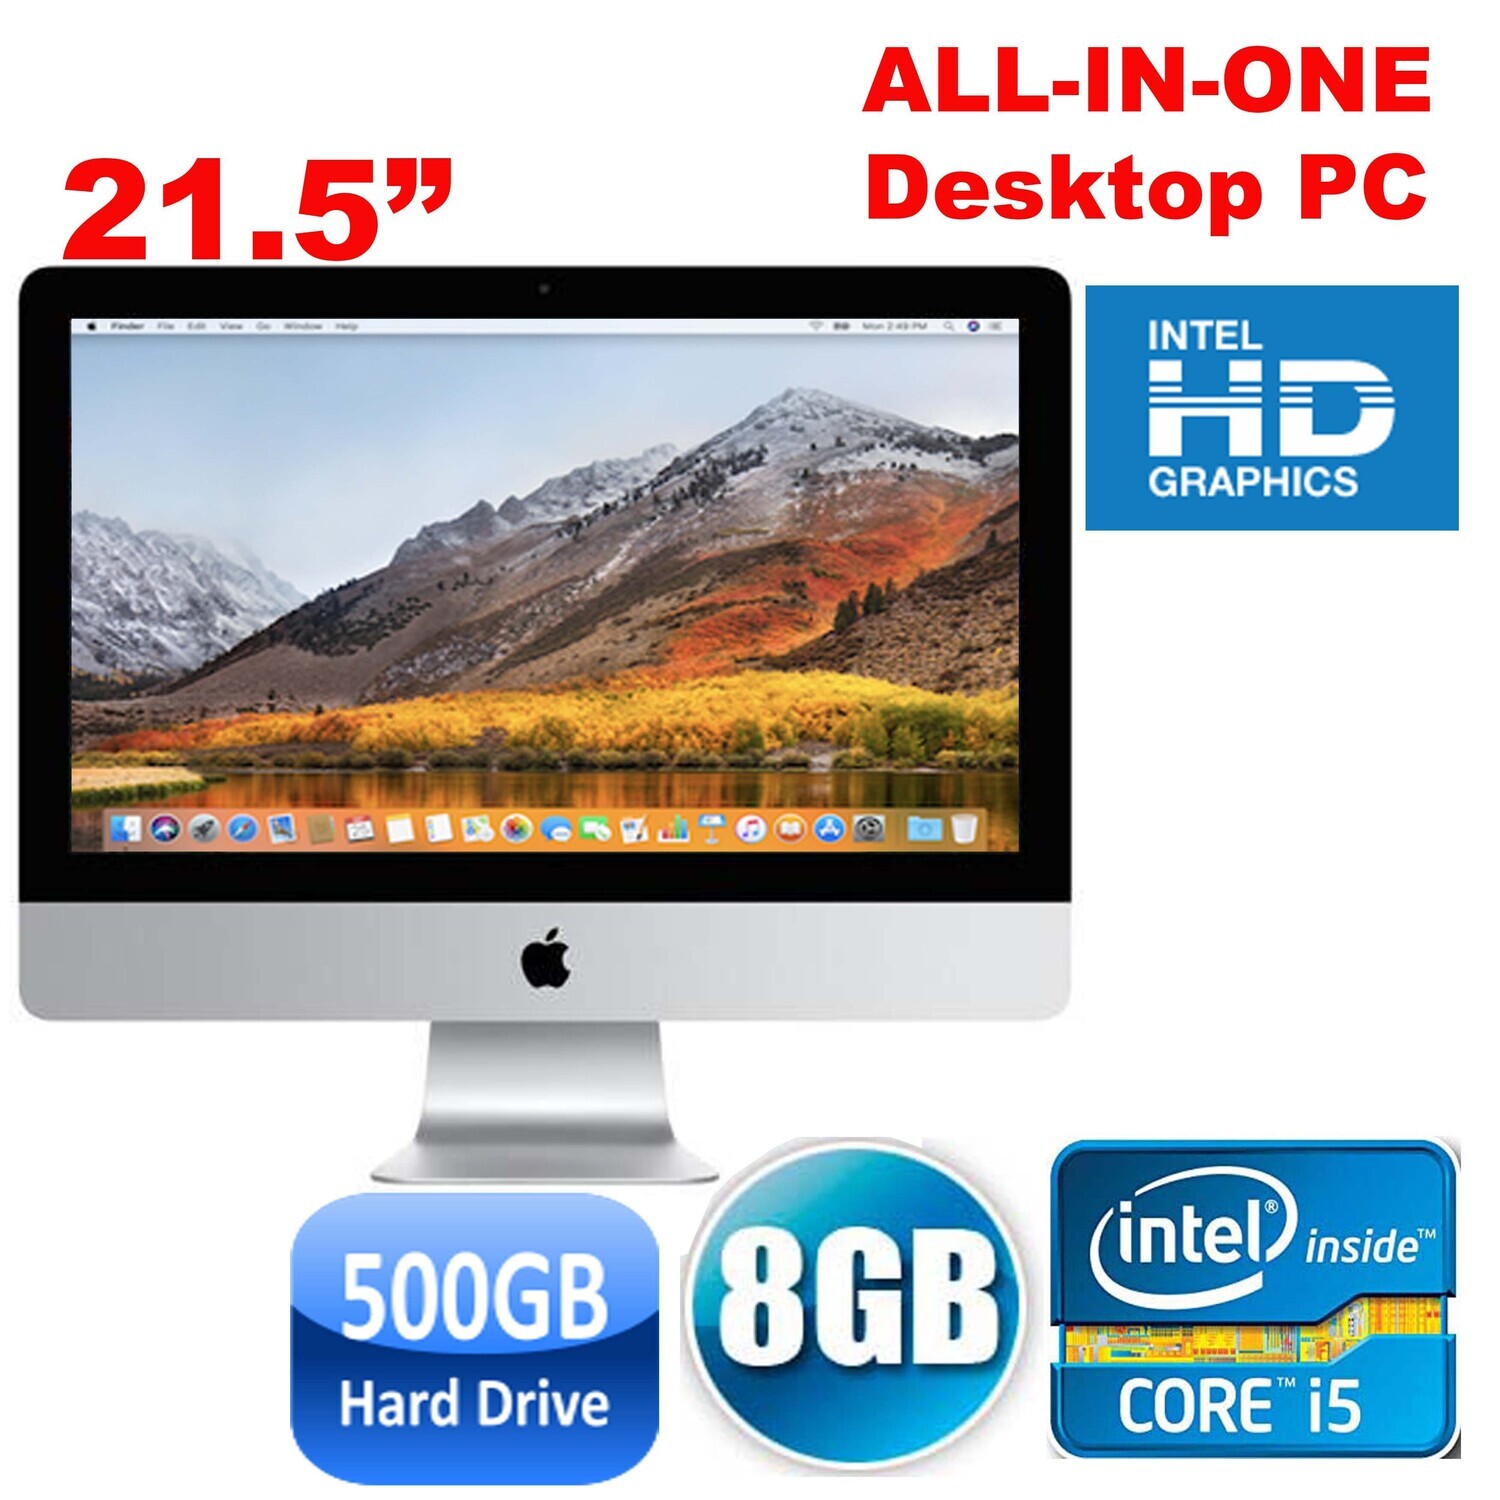 Apple iMac A1311 (2011) i5 @ 2.5 GHz 8 GB 500 GB HDD 21.5" ALL-IN-ONE Desktop MacOS High Sierra